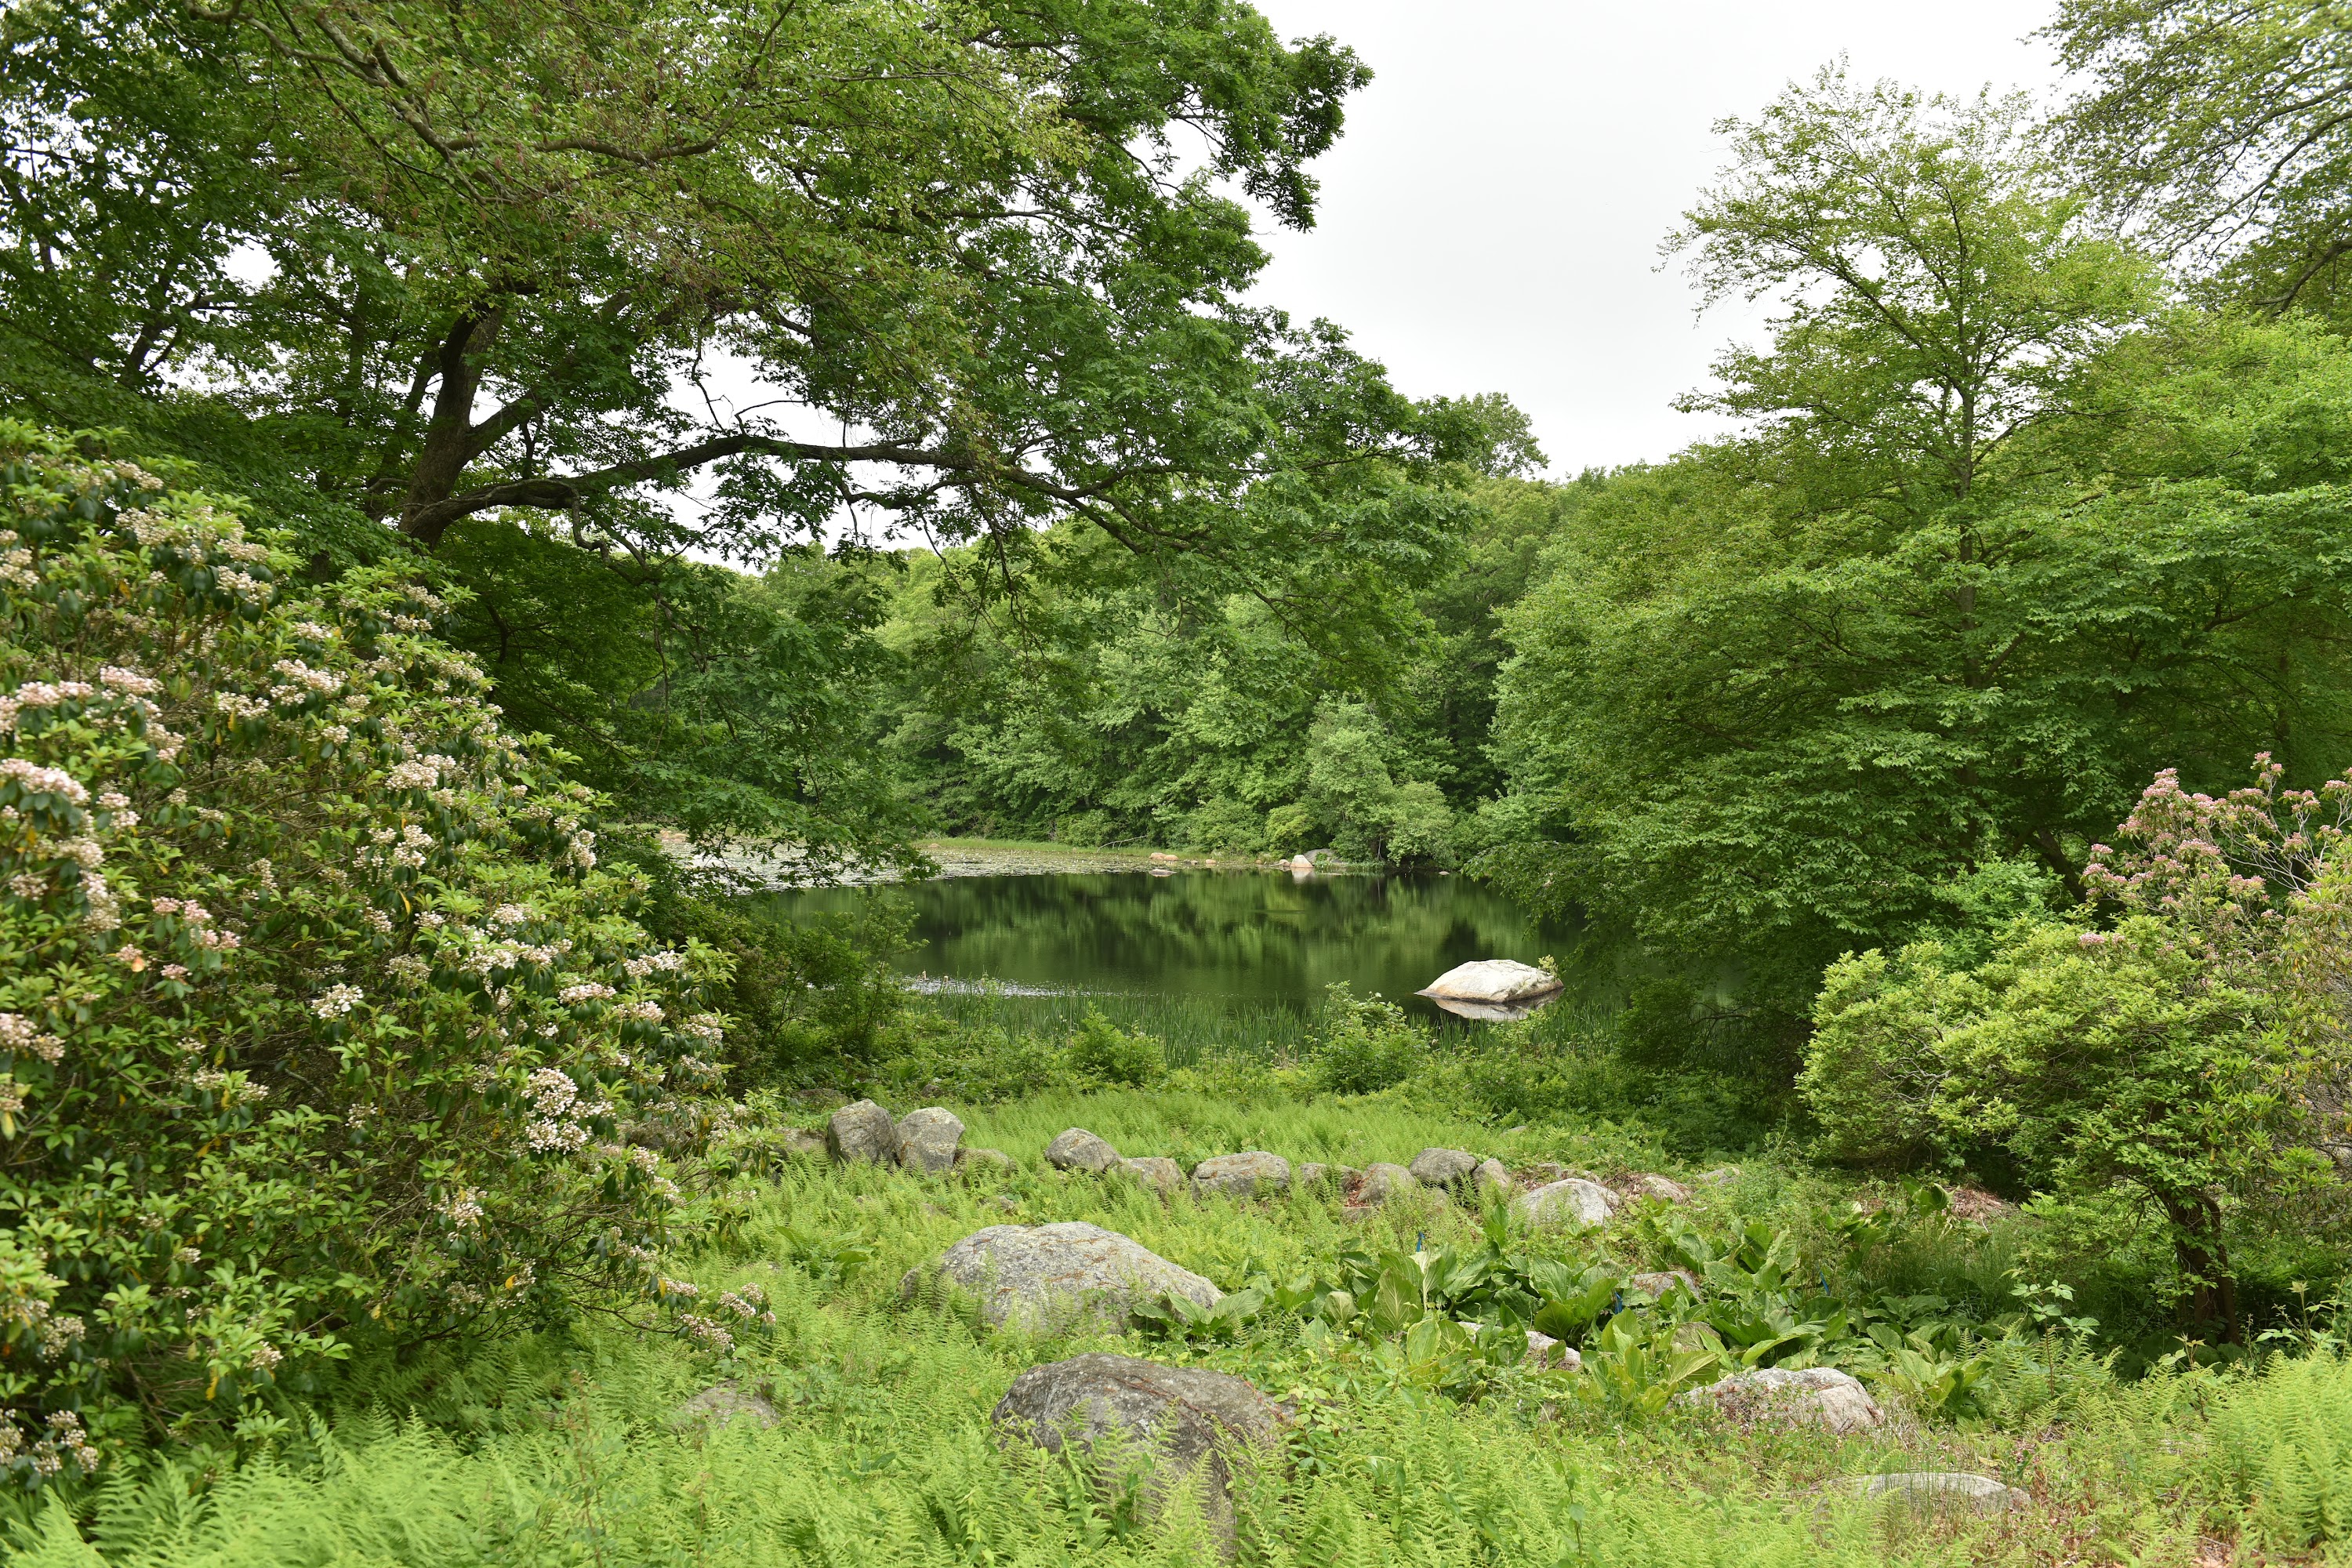 The arboretum pond mid-summer